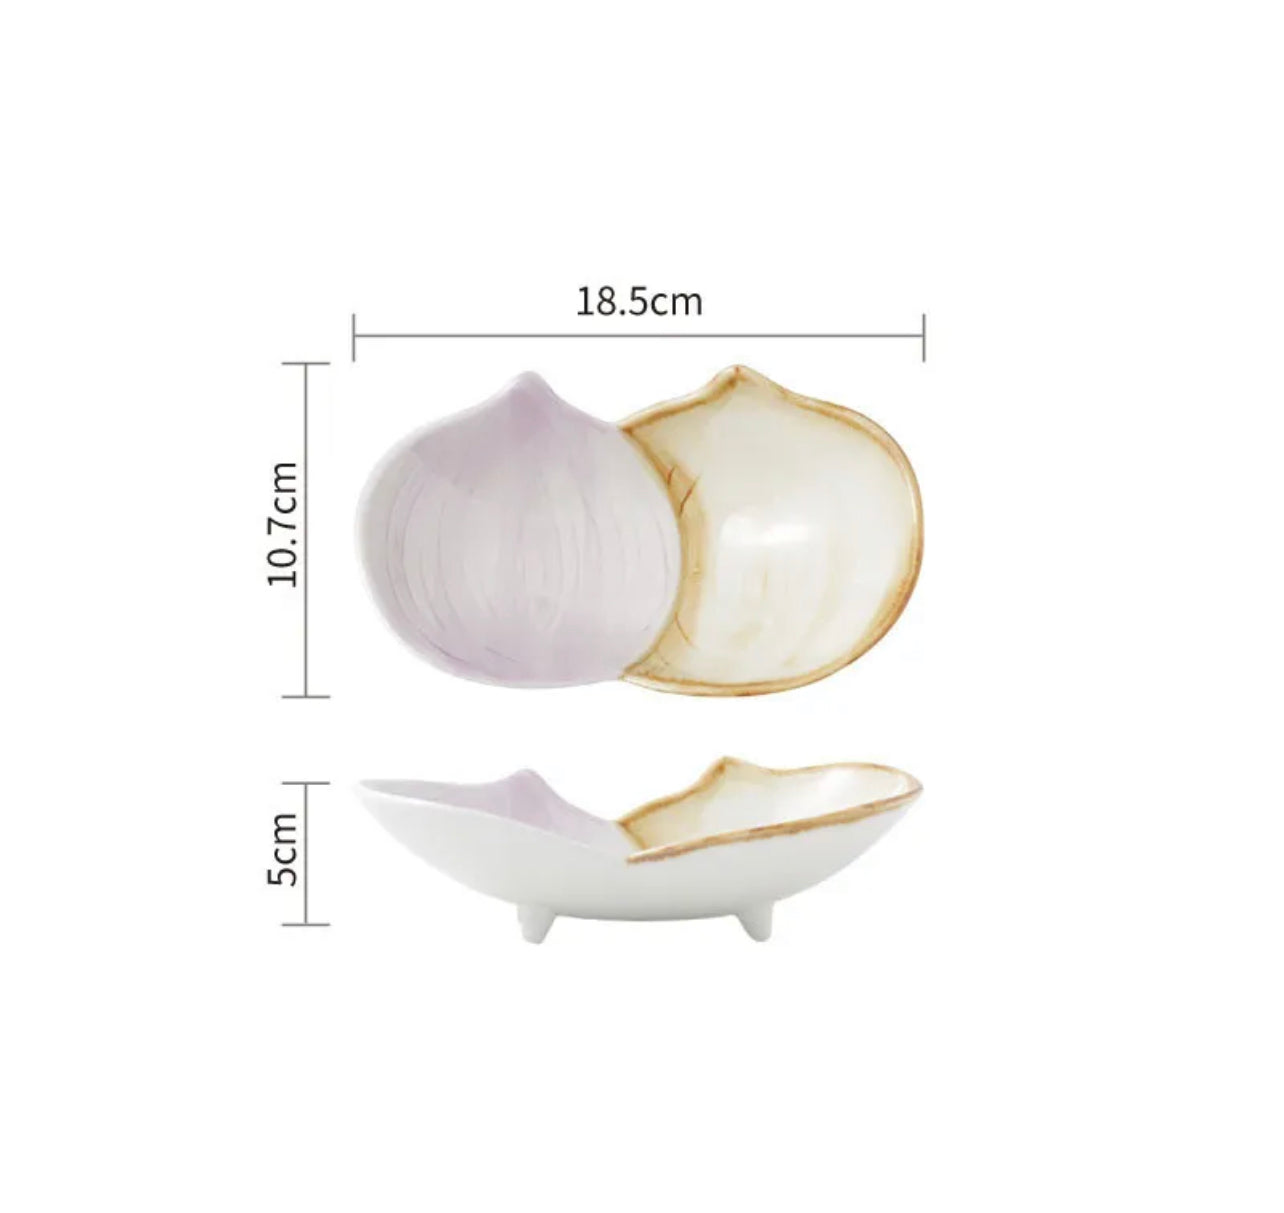 Vegetable Ceramic Snack Bowls - Peanut, Onion, Turnip